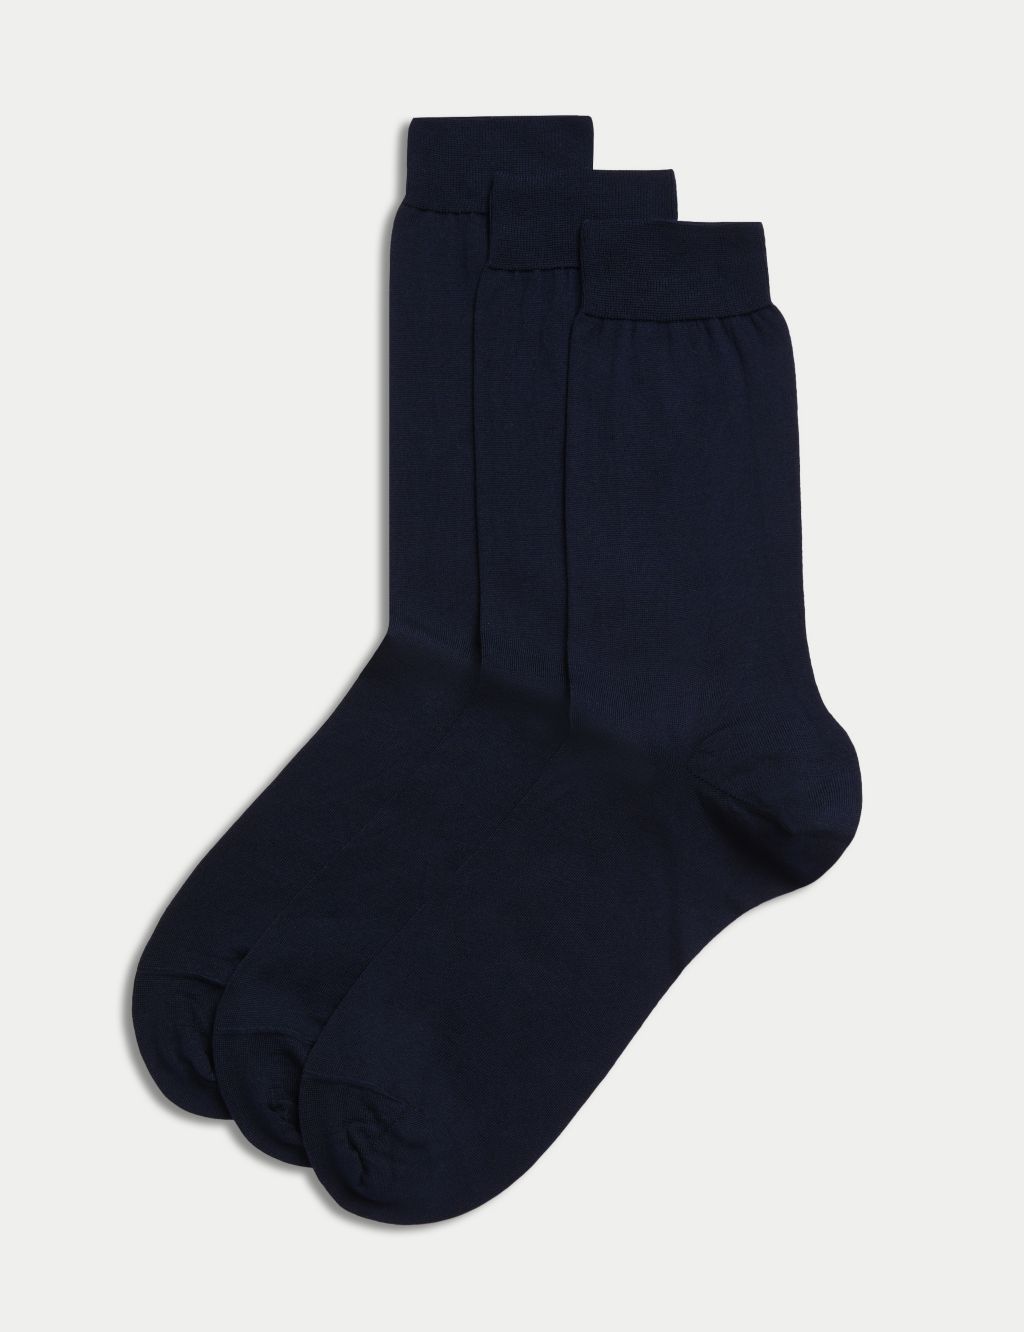 Men's Socks | Socks for Men | M&S